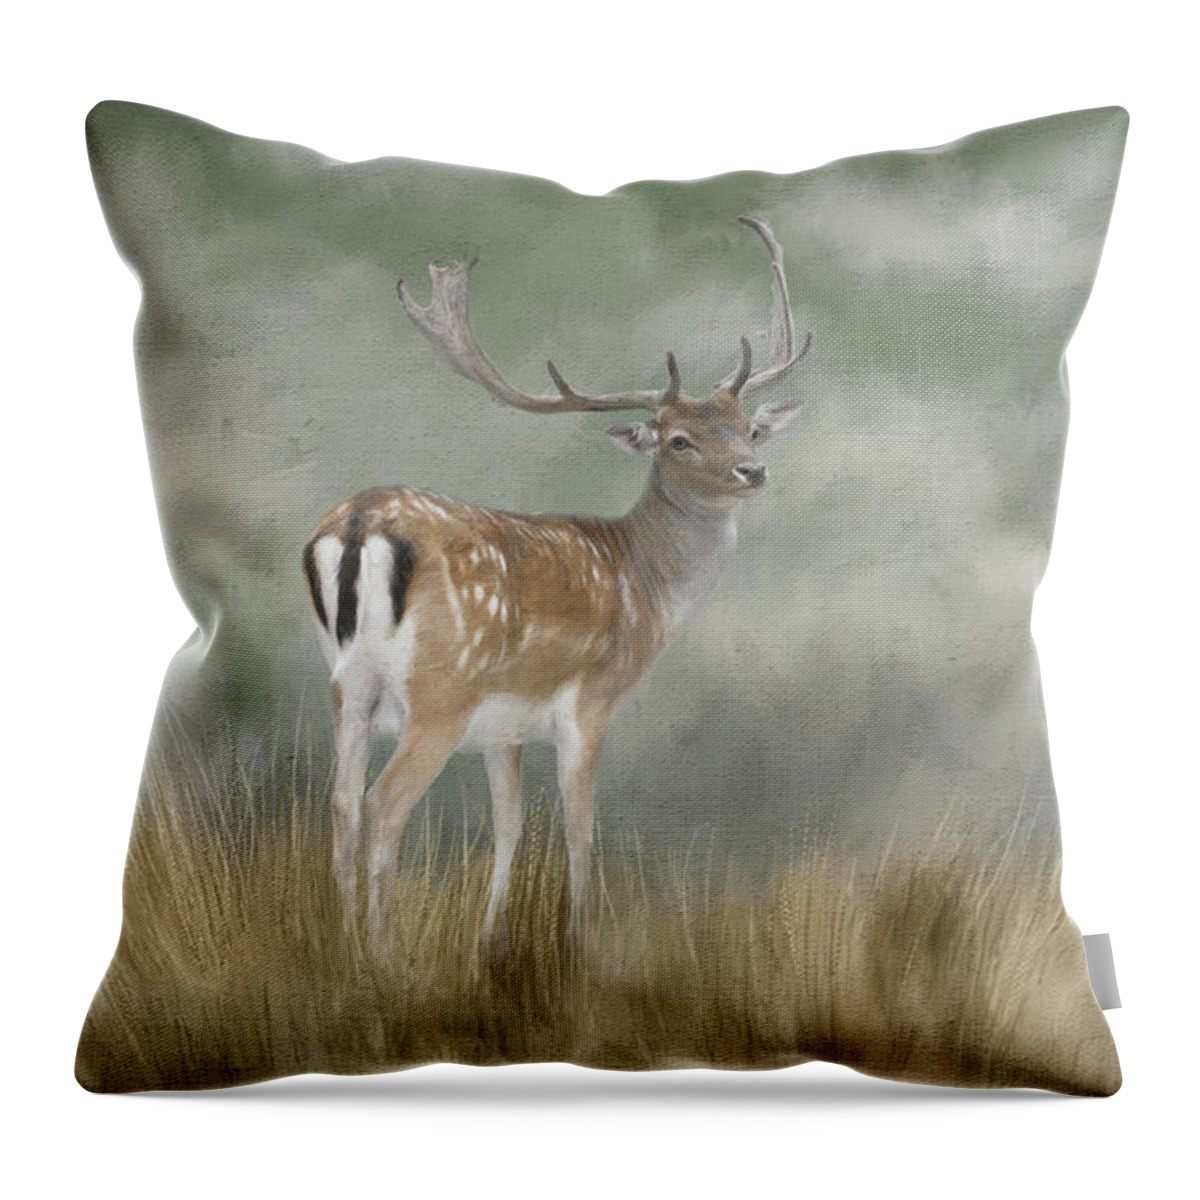 Fallow Deer Throw Pillow featuring the digital art Fallow Deer Portrait II by Jayne Carney